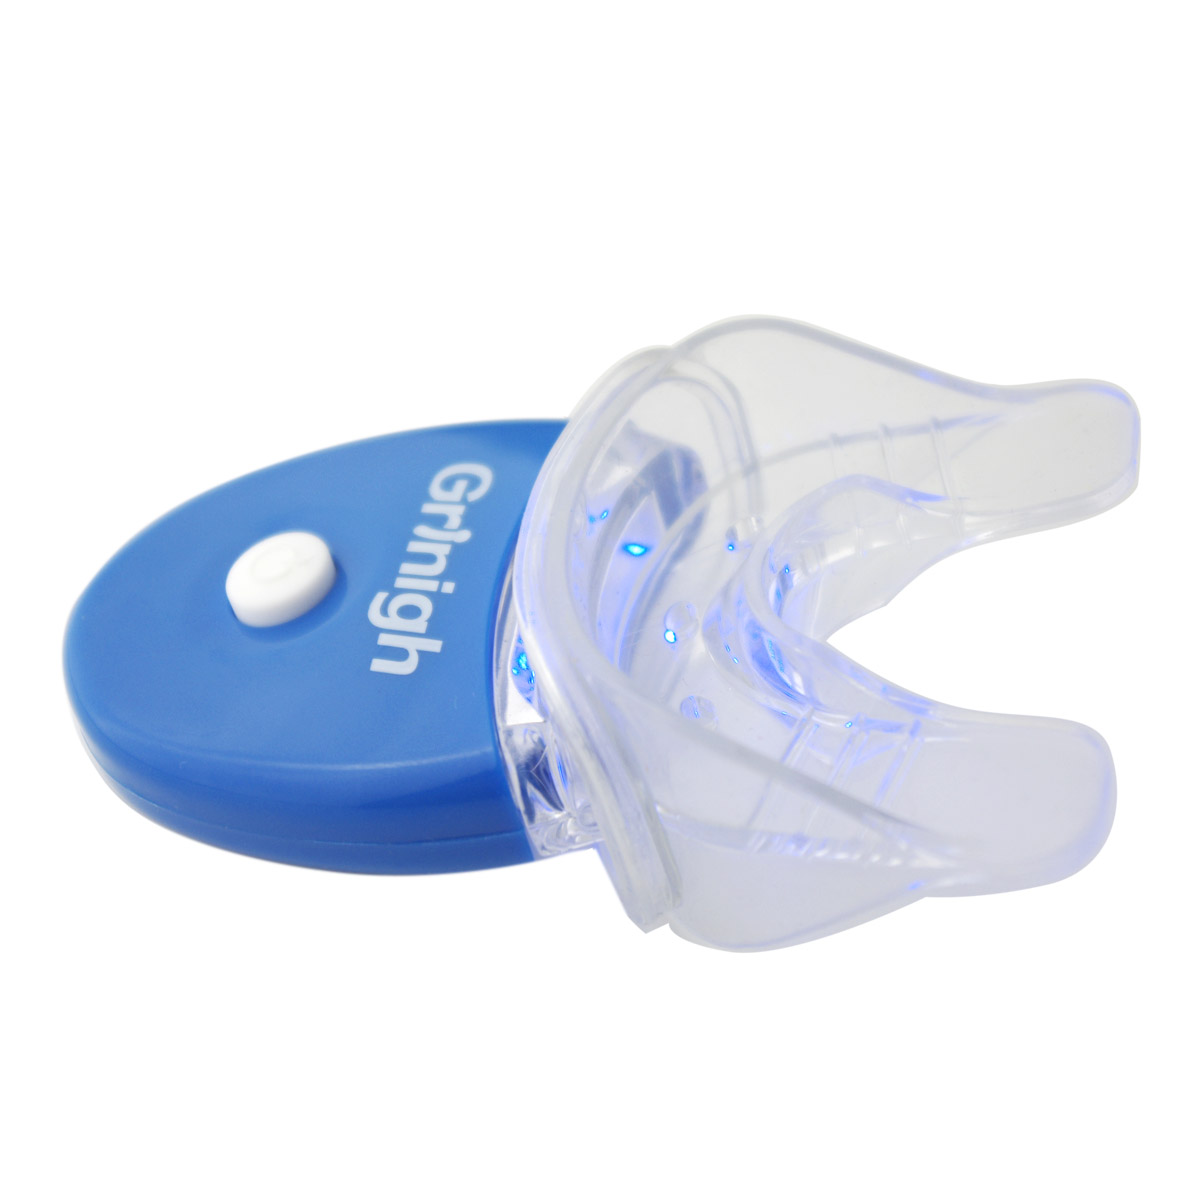 Grin365 5 LED Teeth Whitening Accelerator Light met Attachable bitje